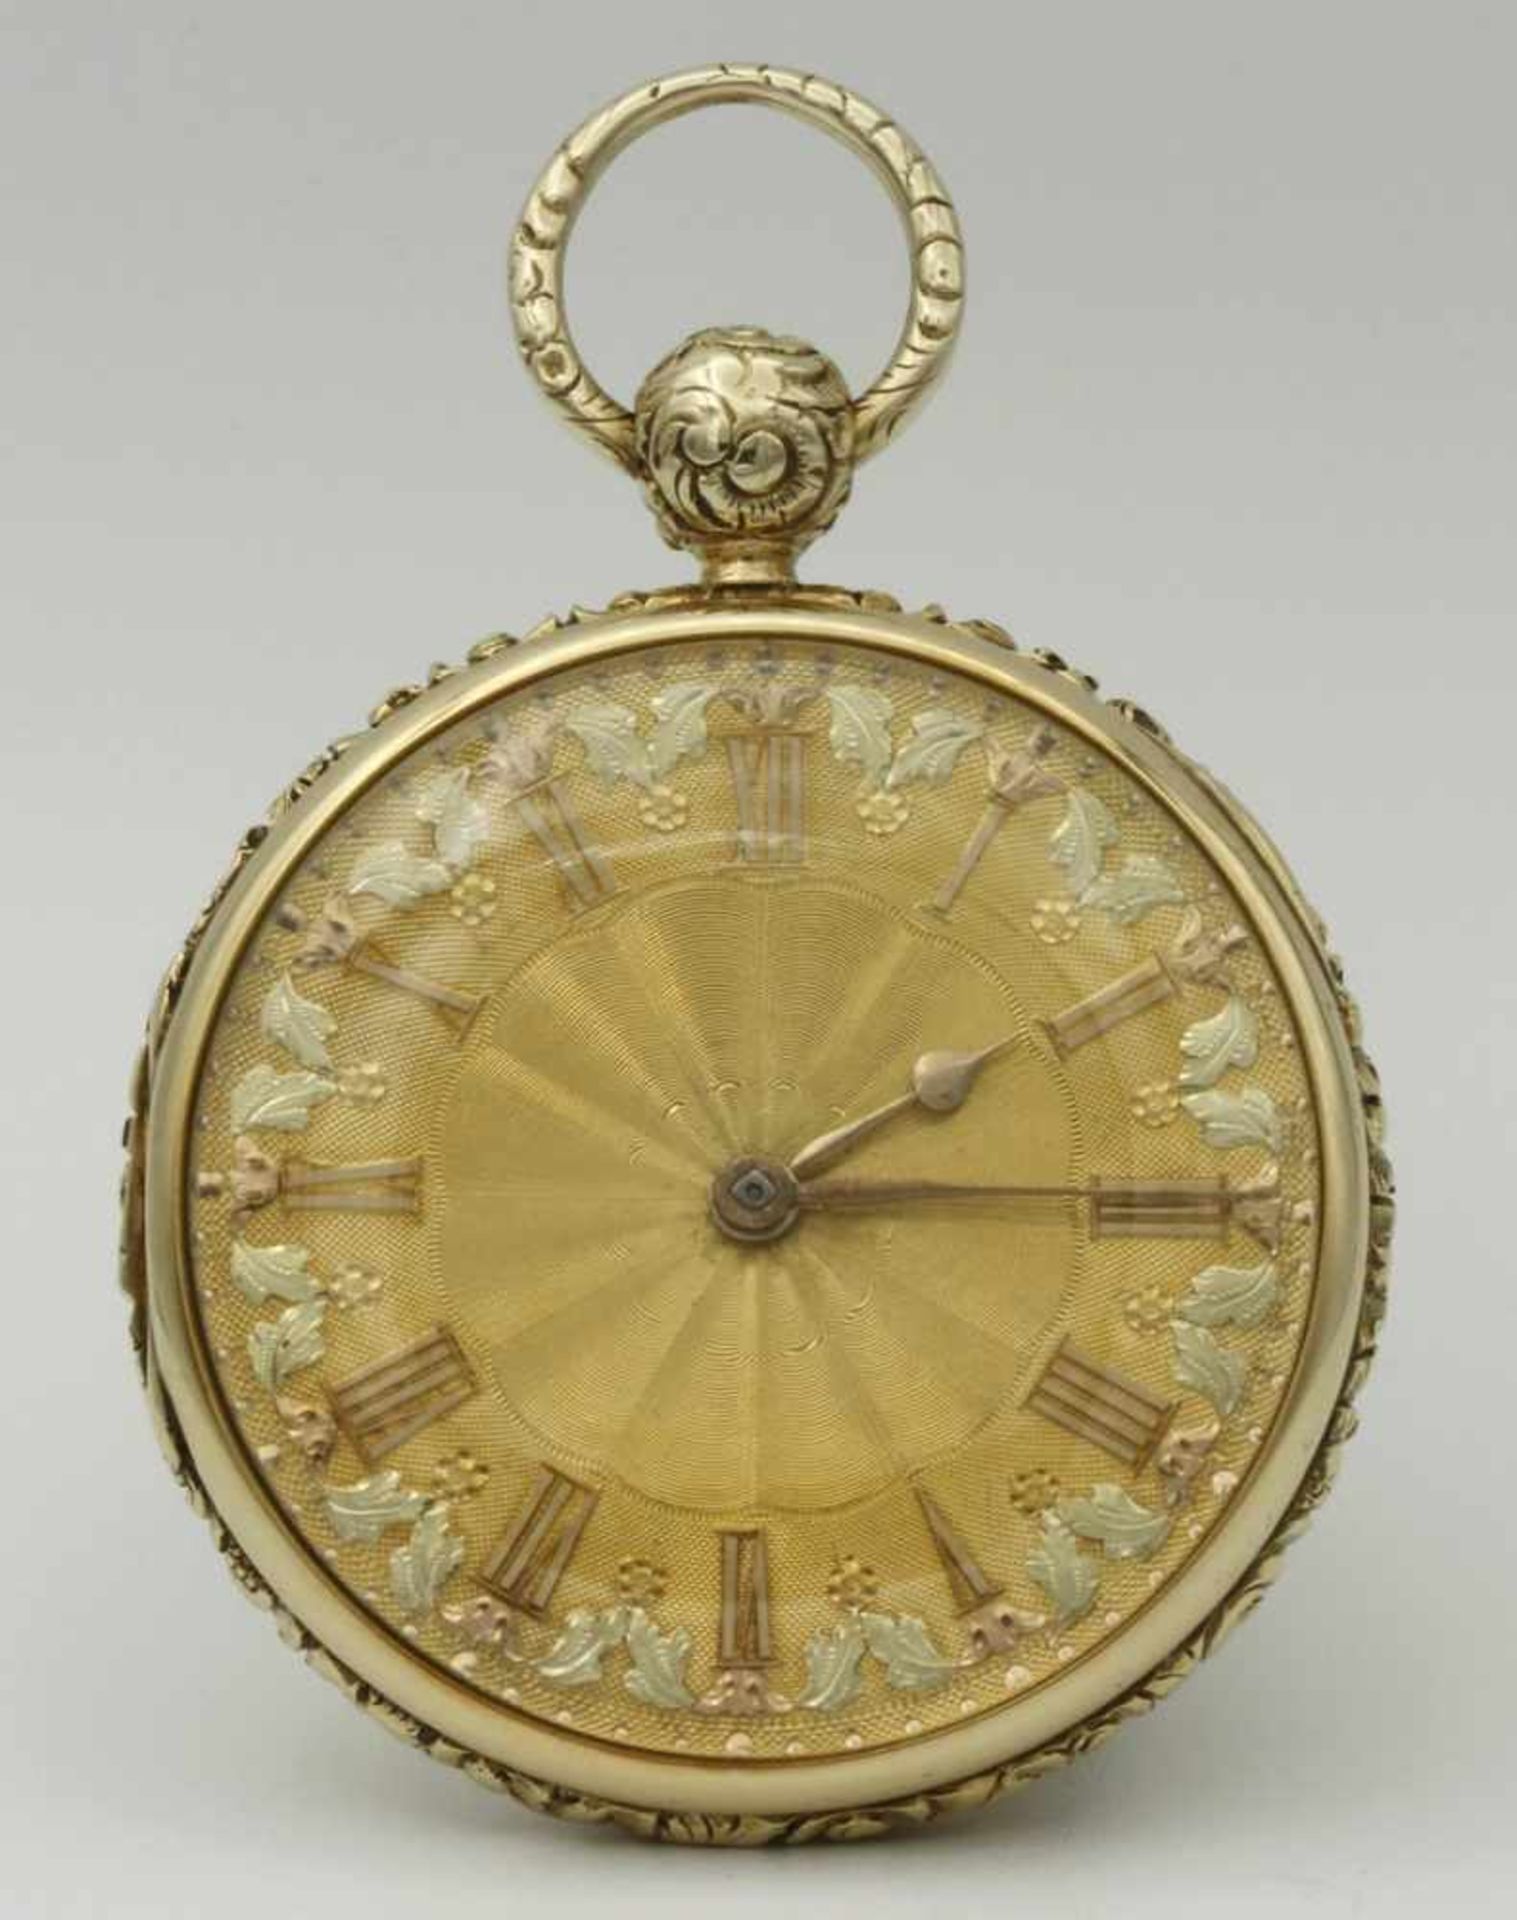 Detached Lever reich verzierte goldene Herrentaschenuhr, um 1830 - Bild 2 aus 6